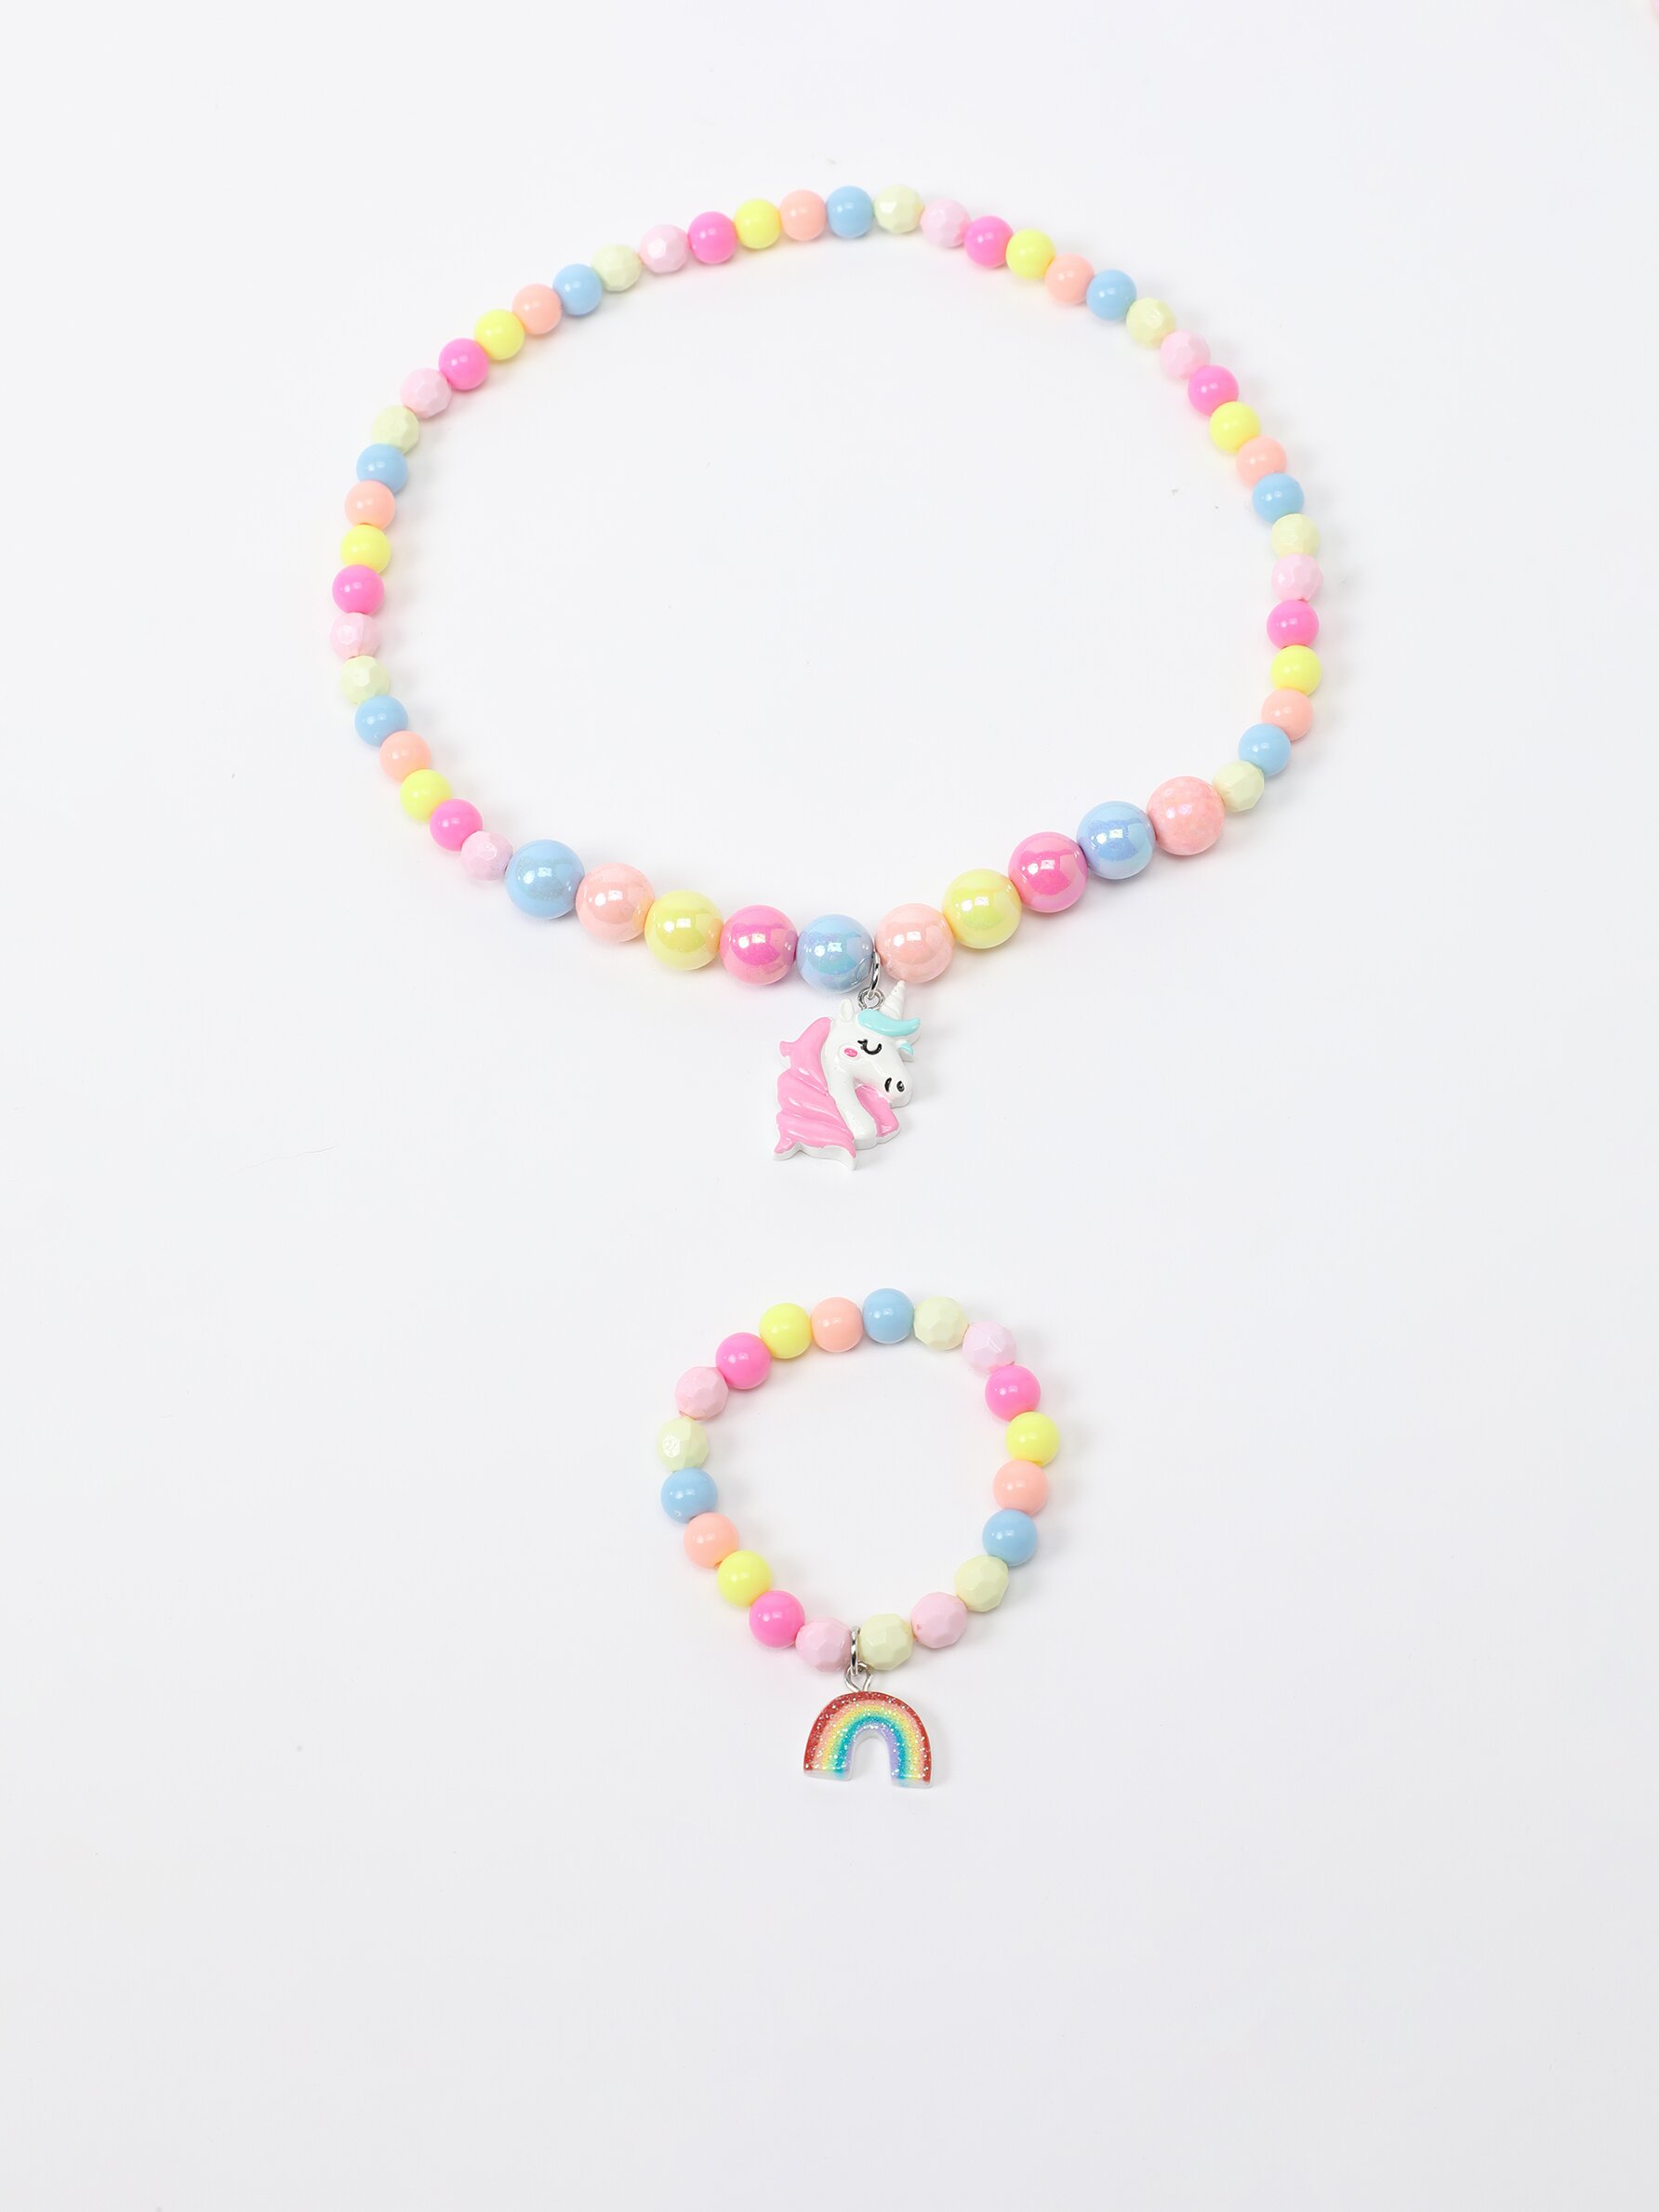 9 Pieces Colorful Unicorn Bracelet Girls Unicorn Bracelets Rainbow Unicorn  Beaded Bracelet for Birthday Party Favors